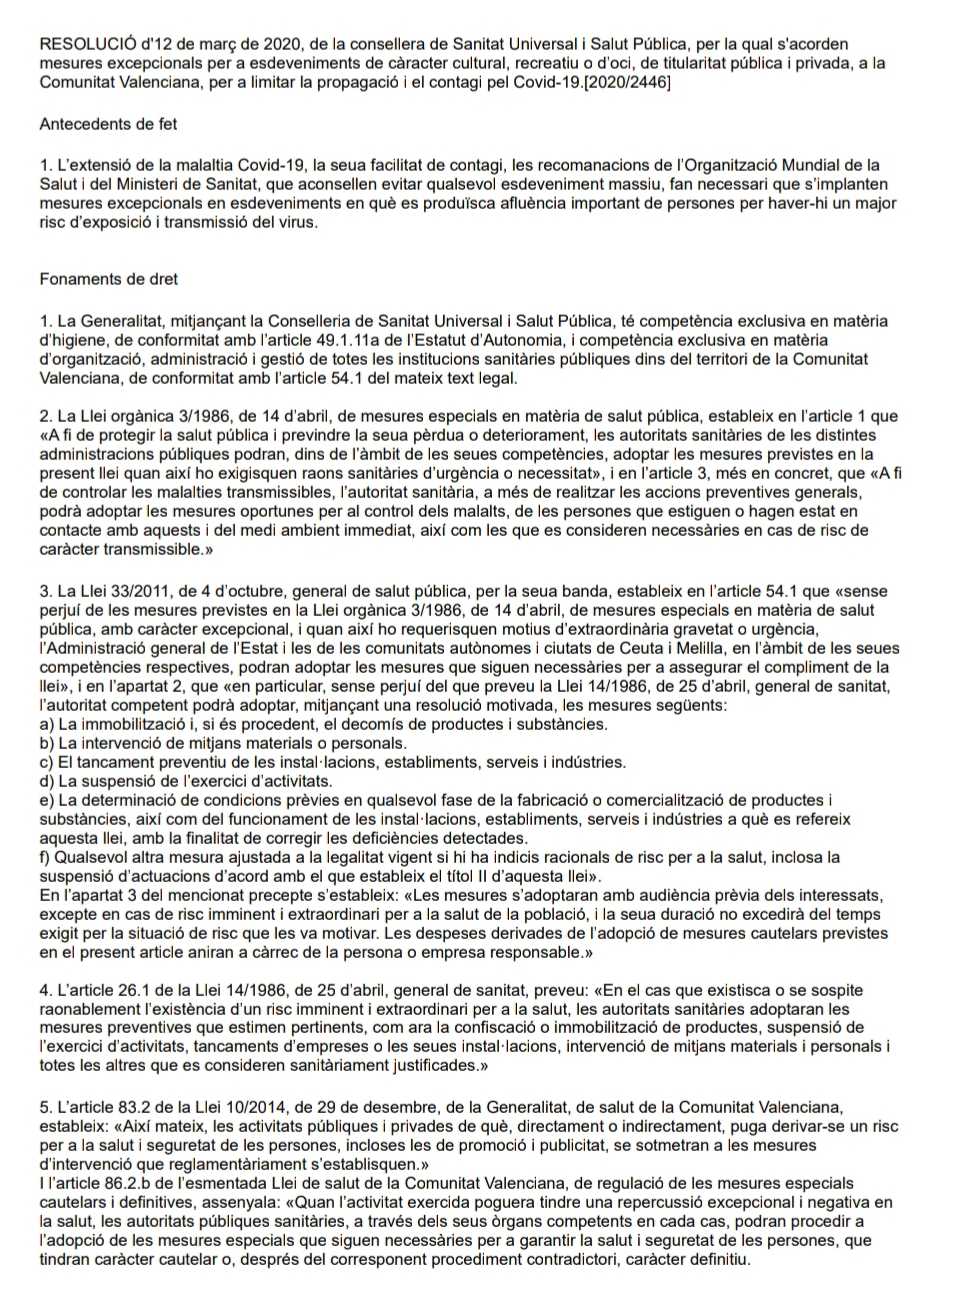 COVID-19: Últims acords Generalitat Valenciana en Matèria Esportiva